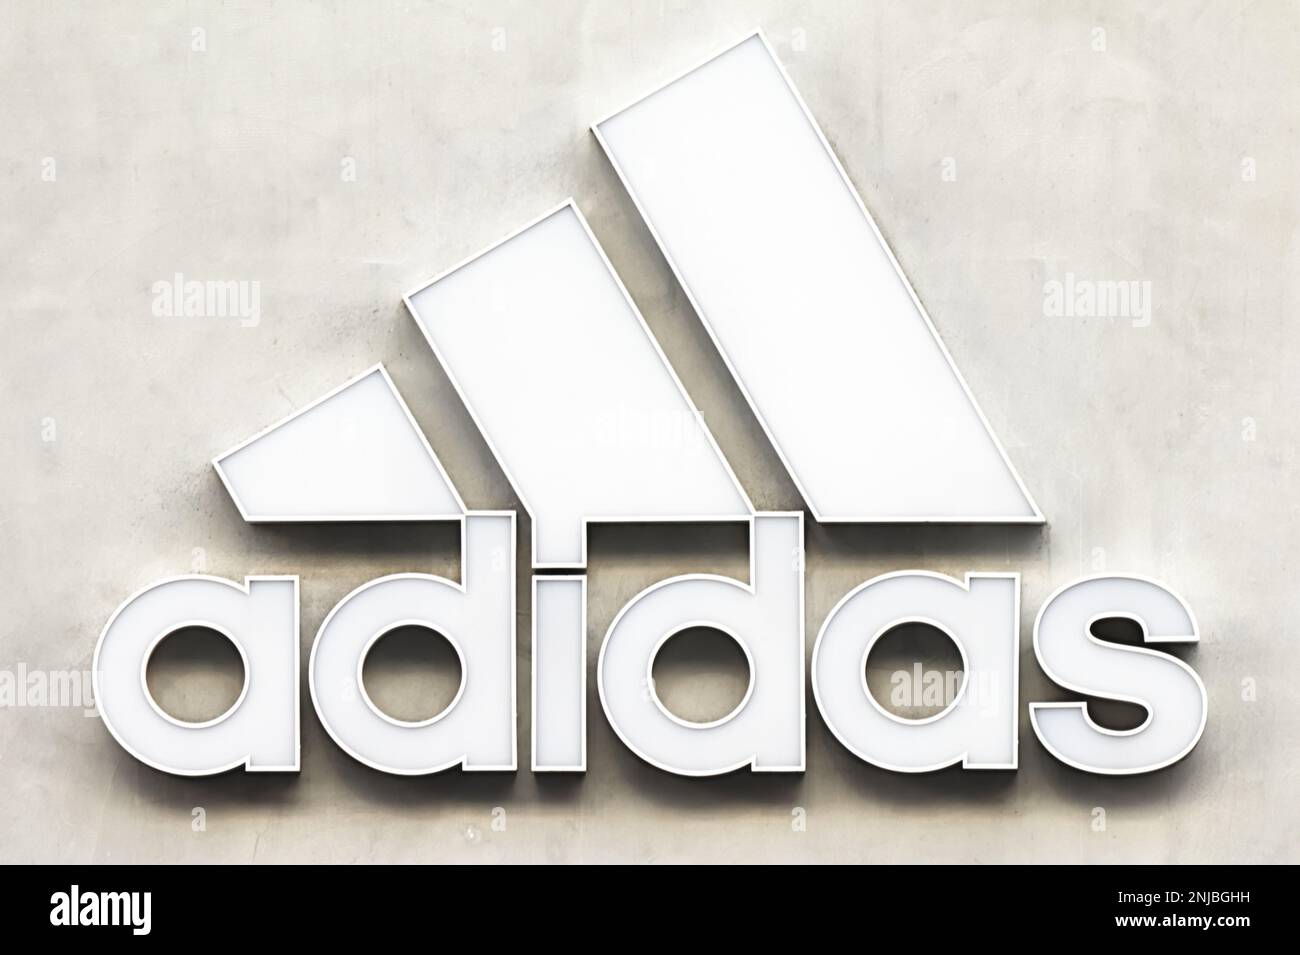 Adidas logo icon sign immagini e fotografie stock ad alta risoluzione -  Alamy